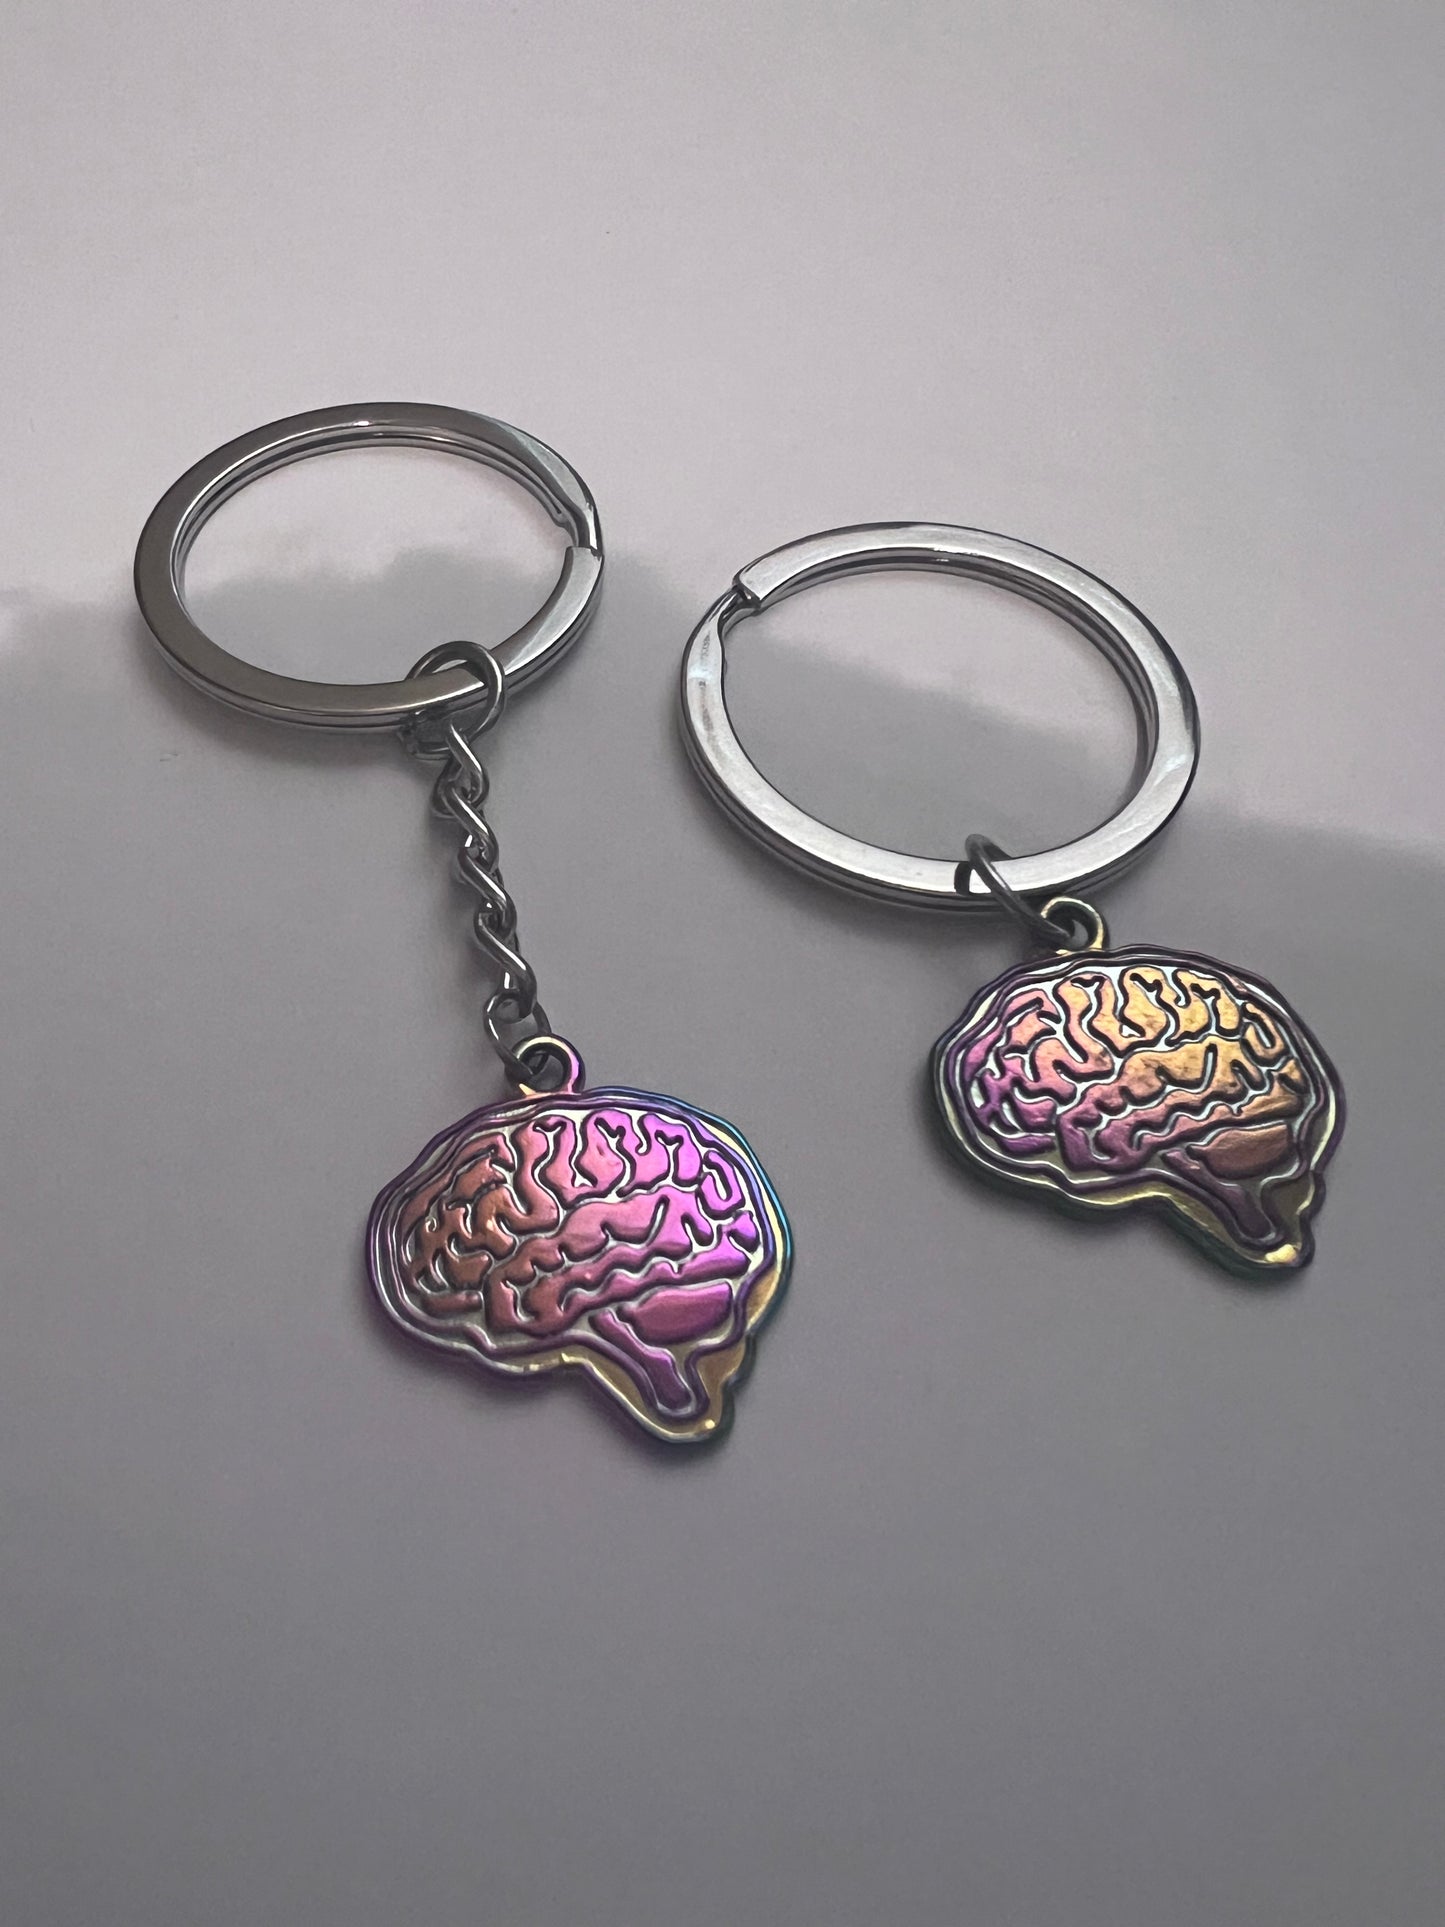 Brain Stainless Steel Keychains